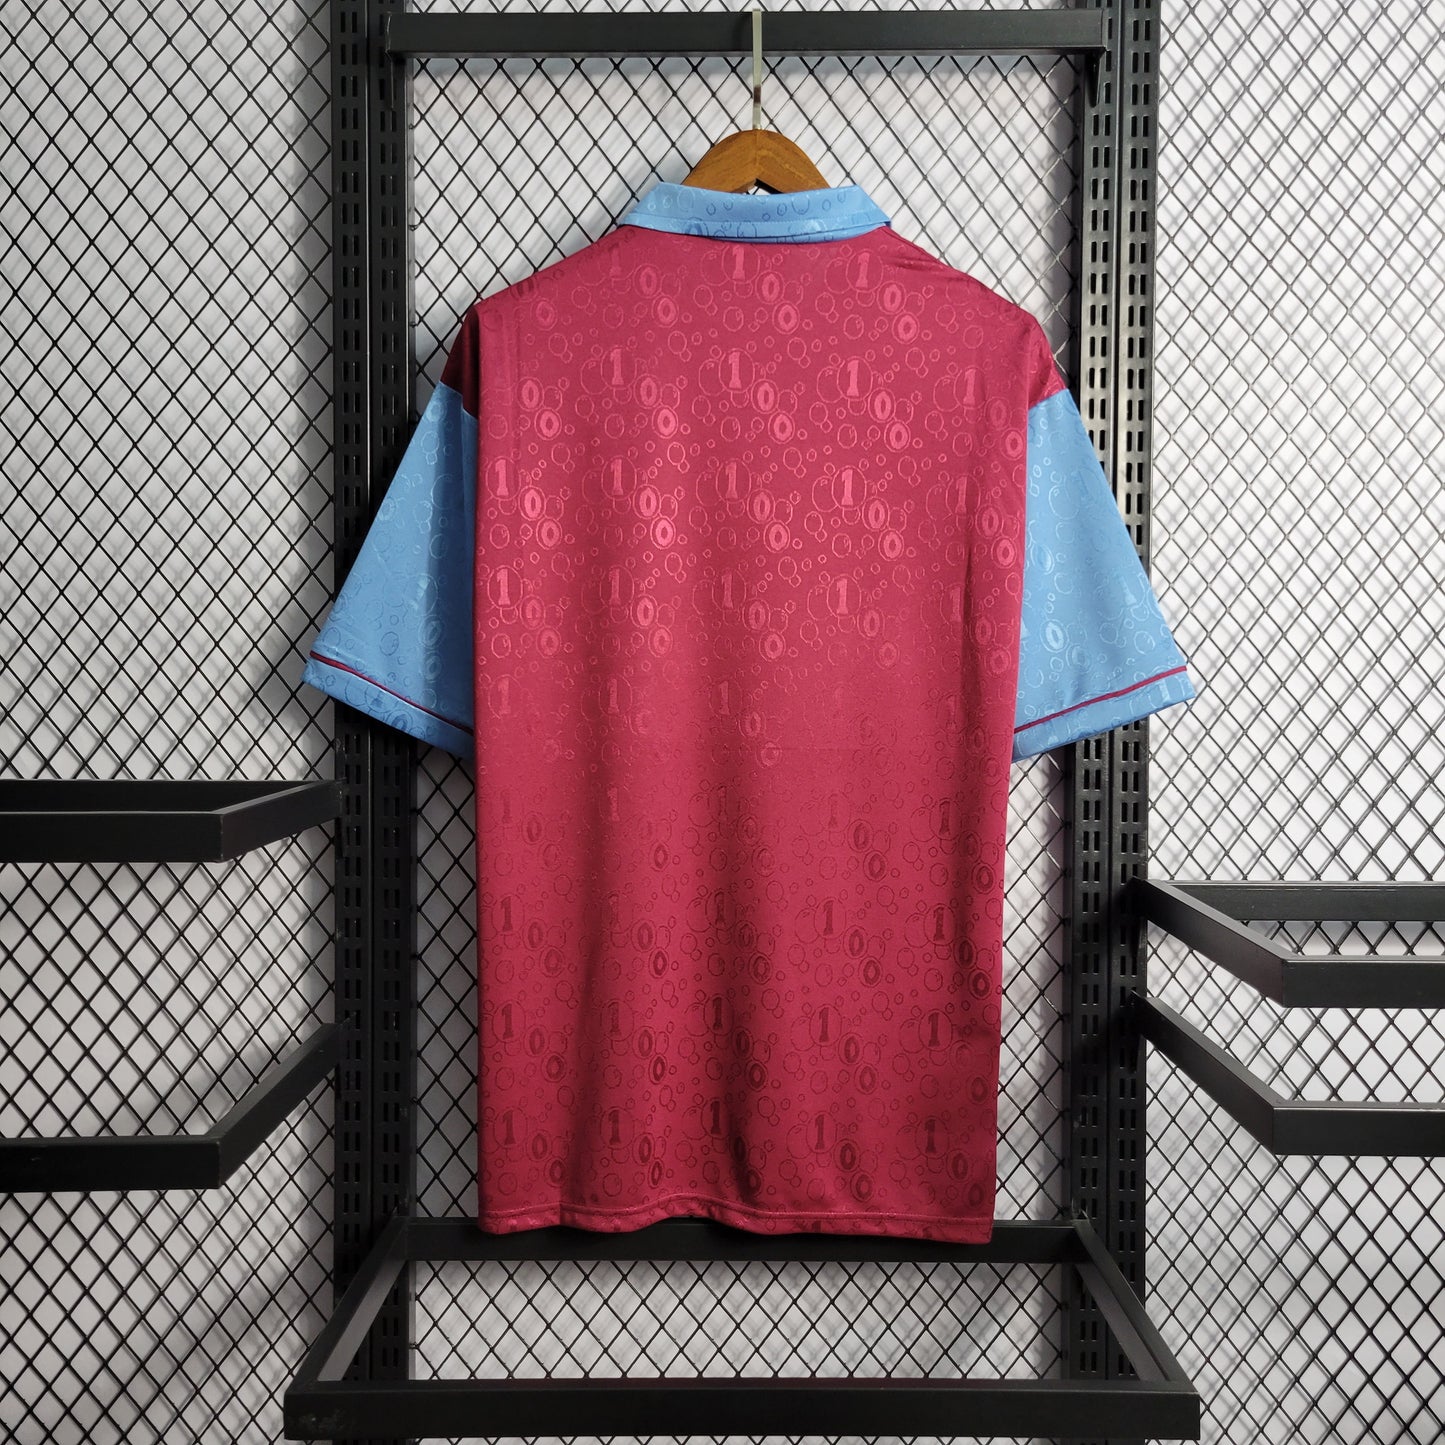 Camisa Retrô West Ham Home 1995/97